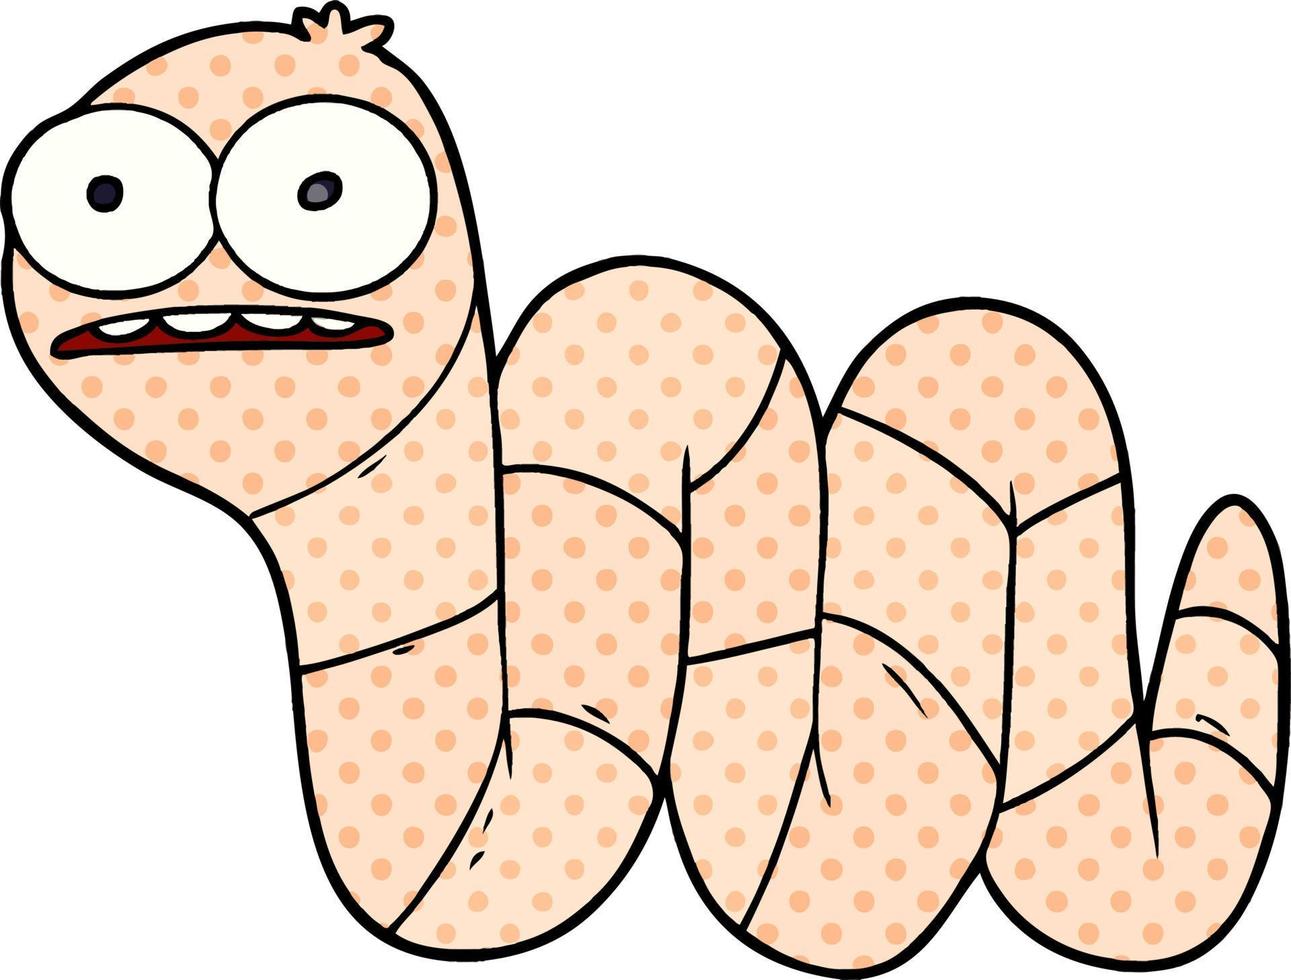 gusano nervioso de dibujos animados vector